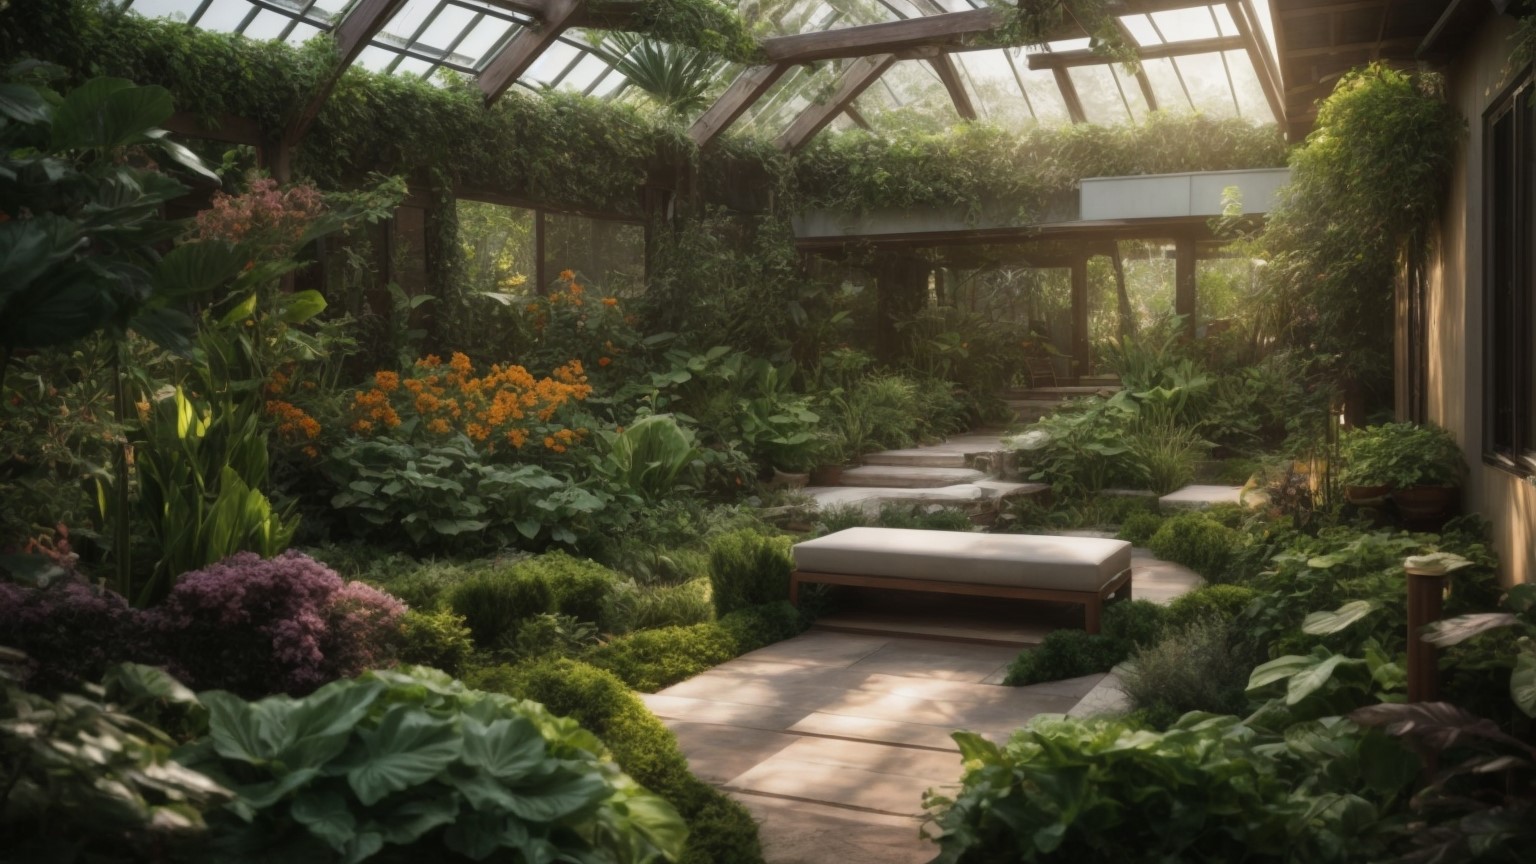 A Virtual Tour of the Ultimate Home Garden Setup